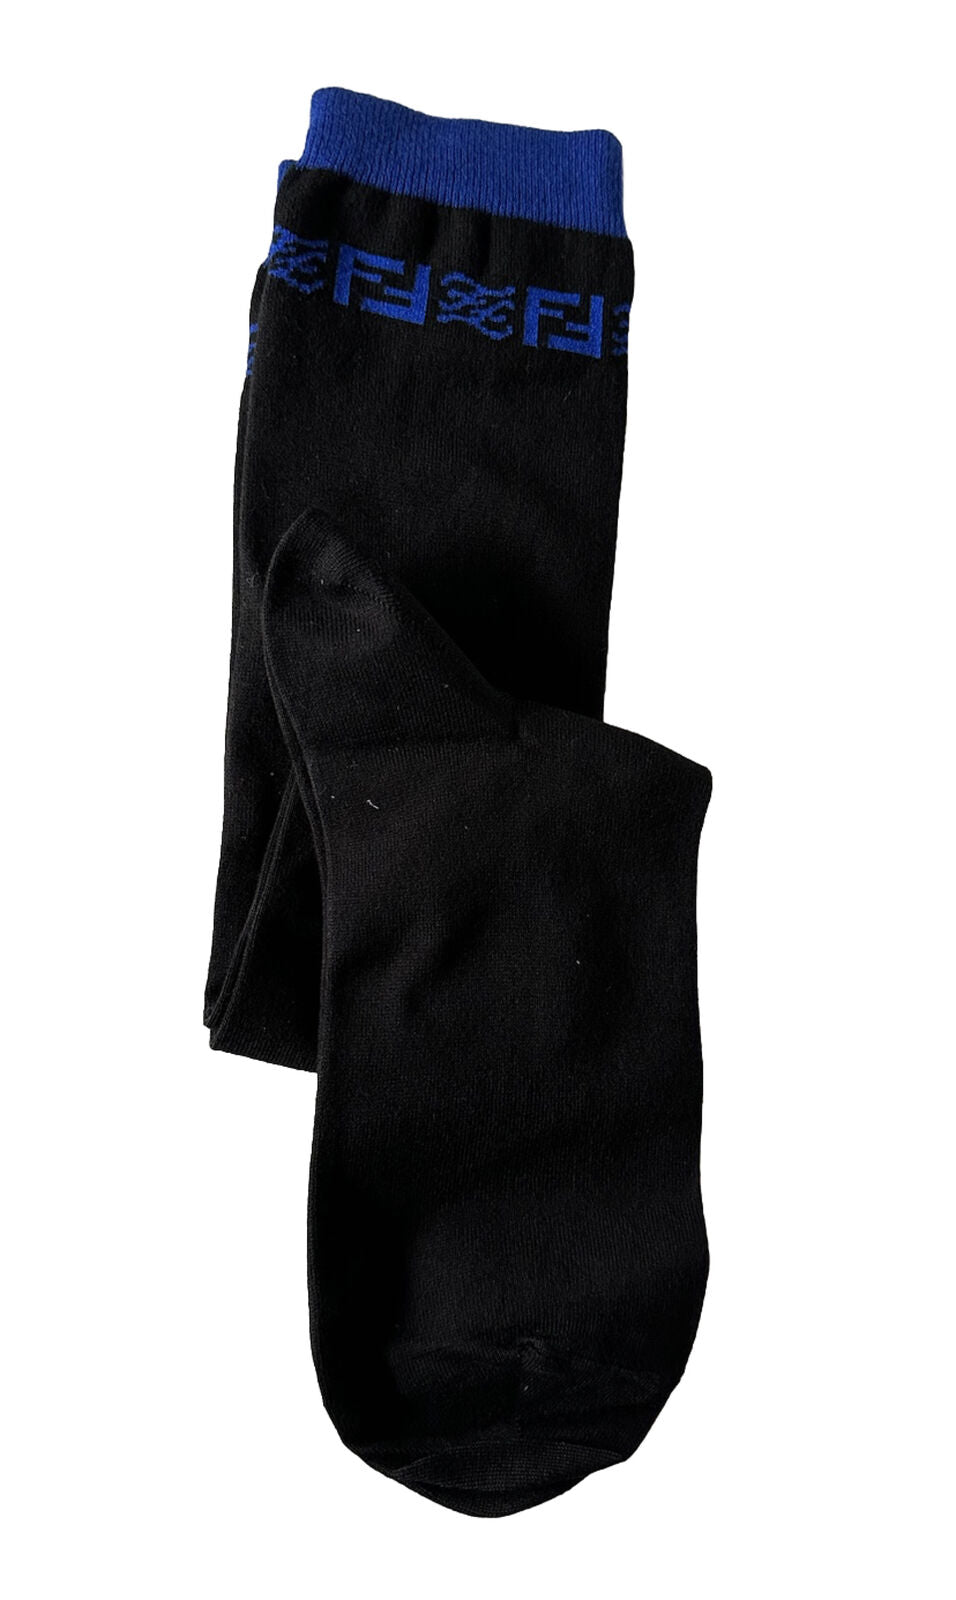 Neu mit Etikett: 260 $ Fendi FF Karligraphy-Socken, Schwarz, Größe L, hergestellt in Italien